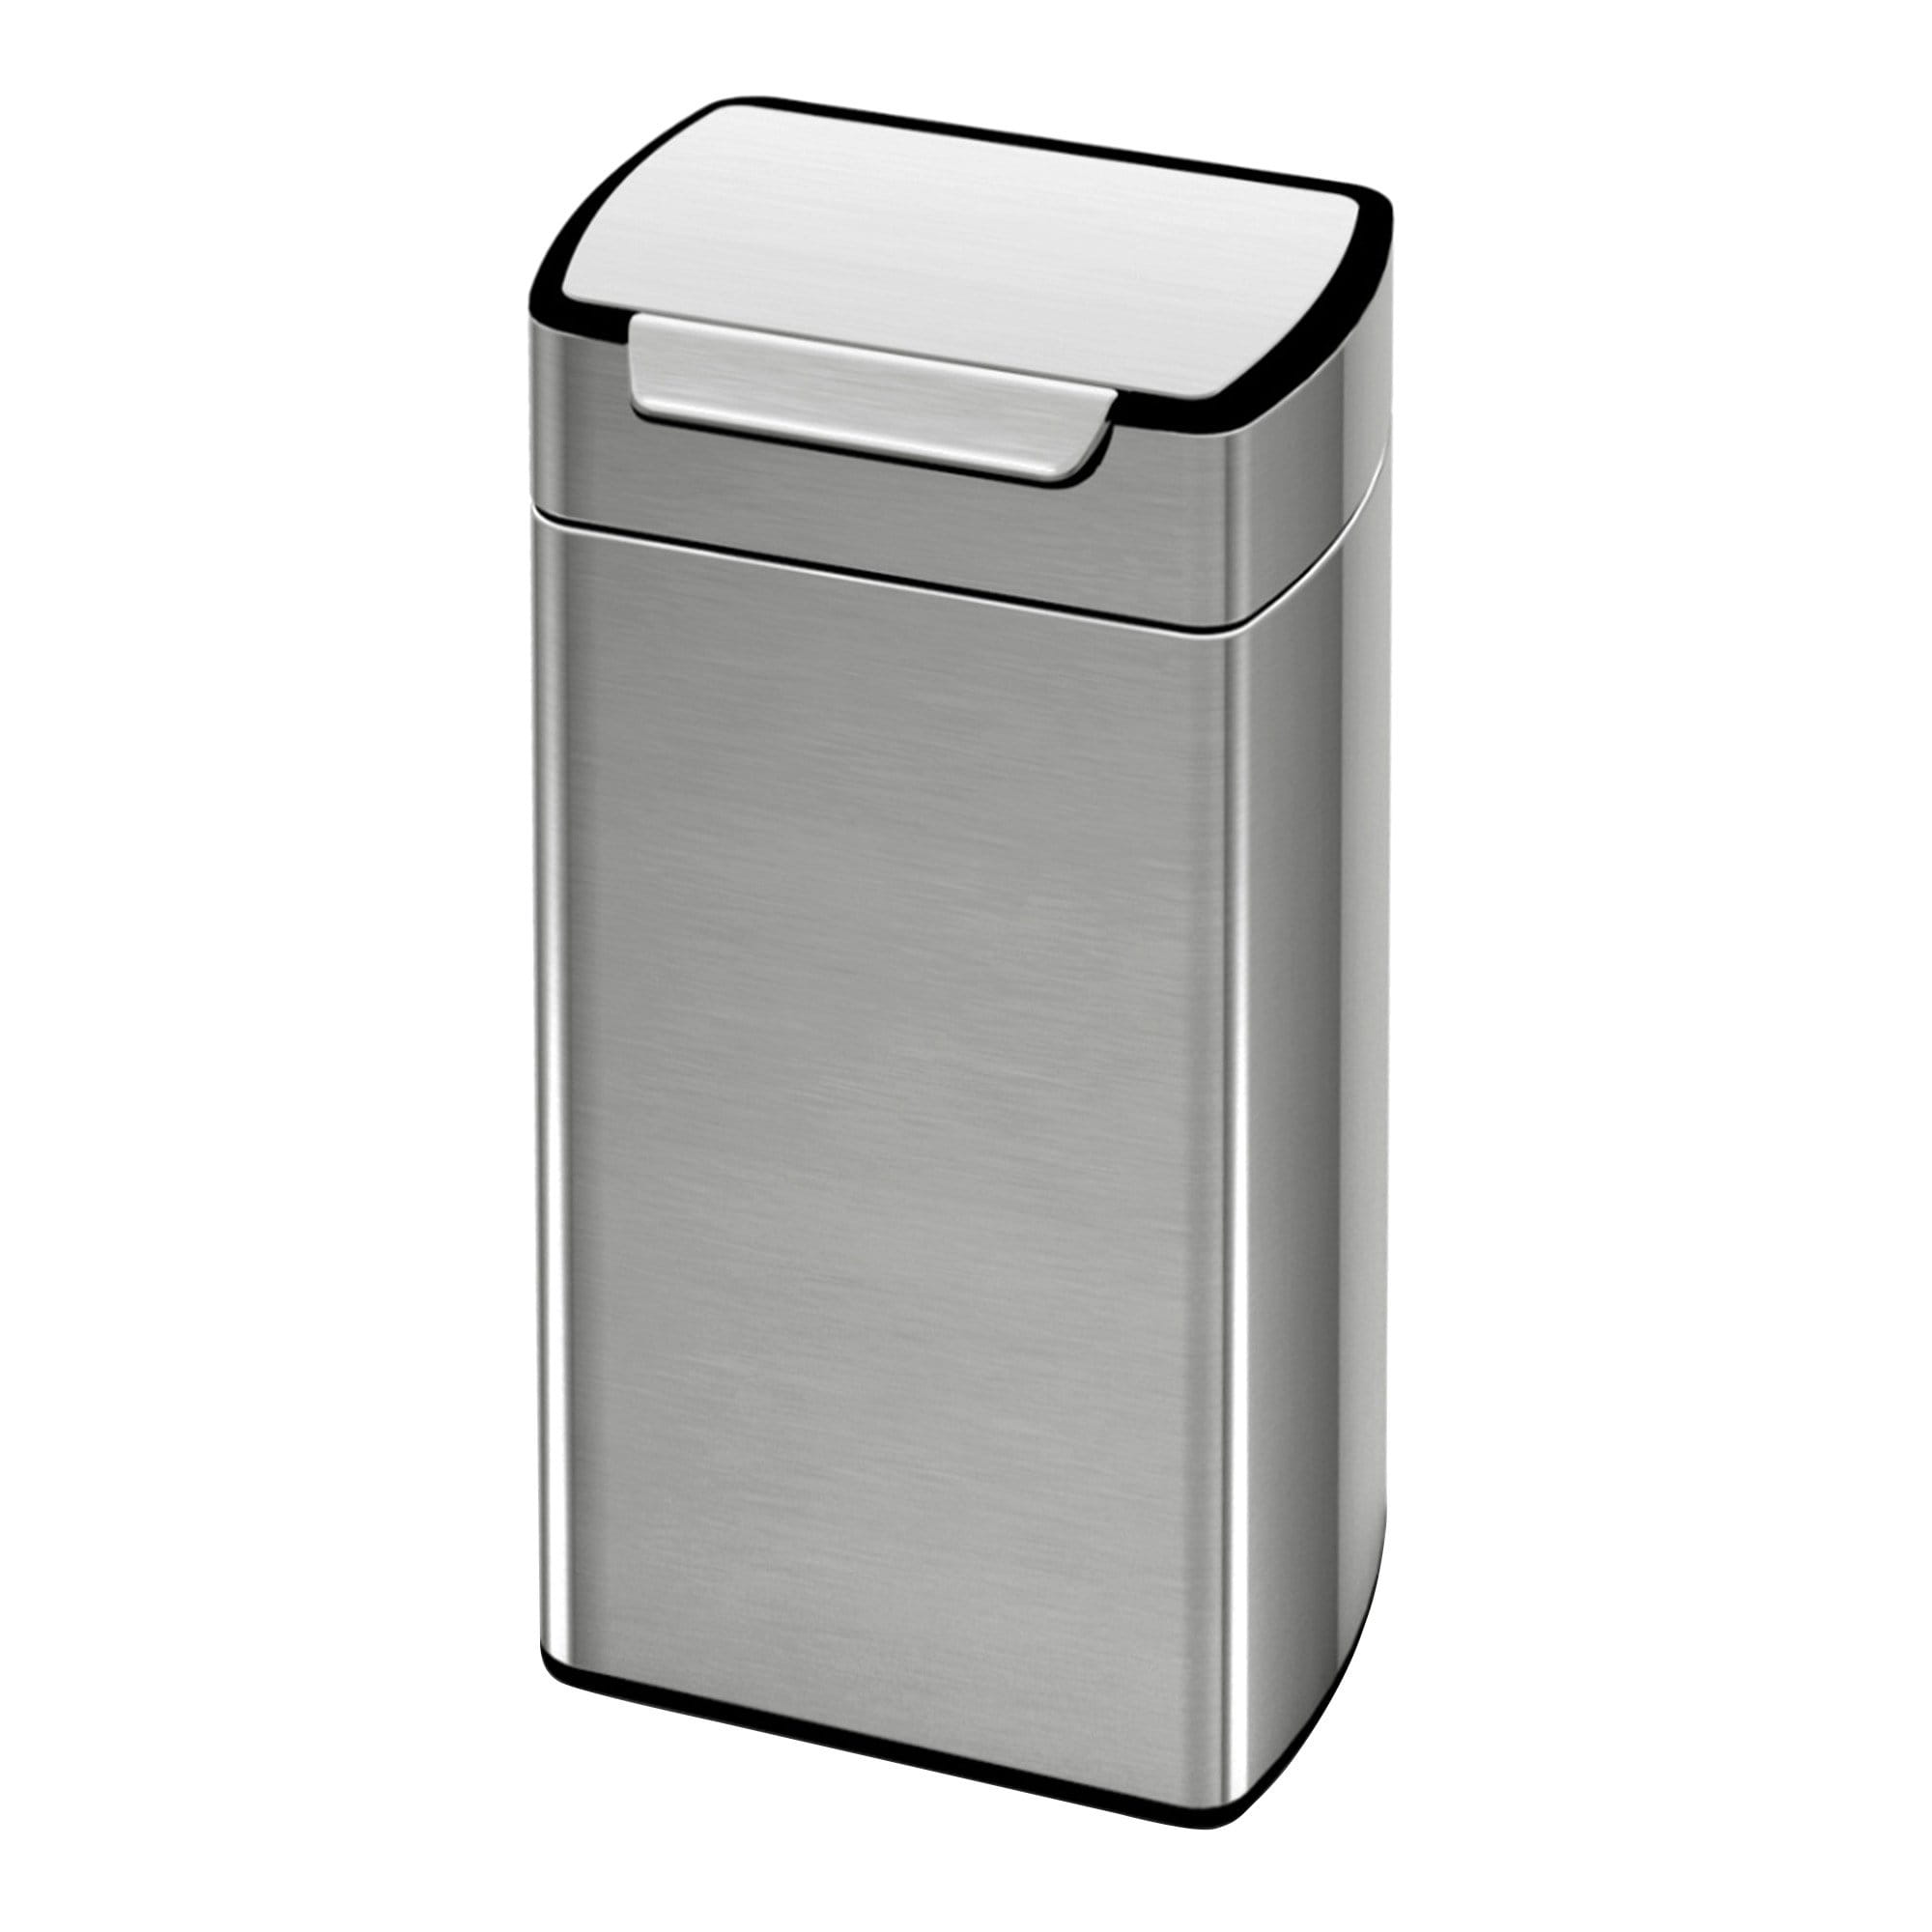 Simplehuman Rectangular Touch-Bar Bin Abfallbehälter 30 Liter Edelstahl matt, 10015590_1